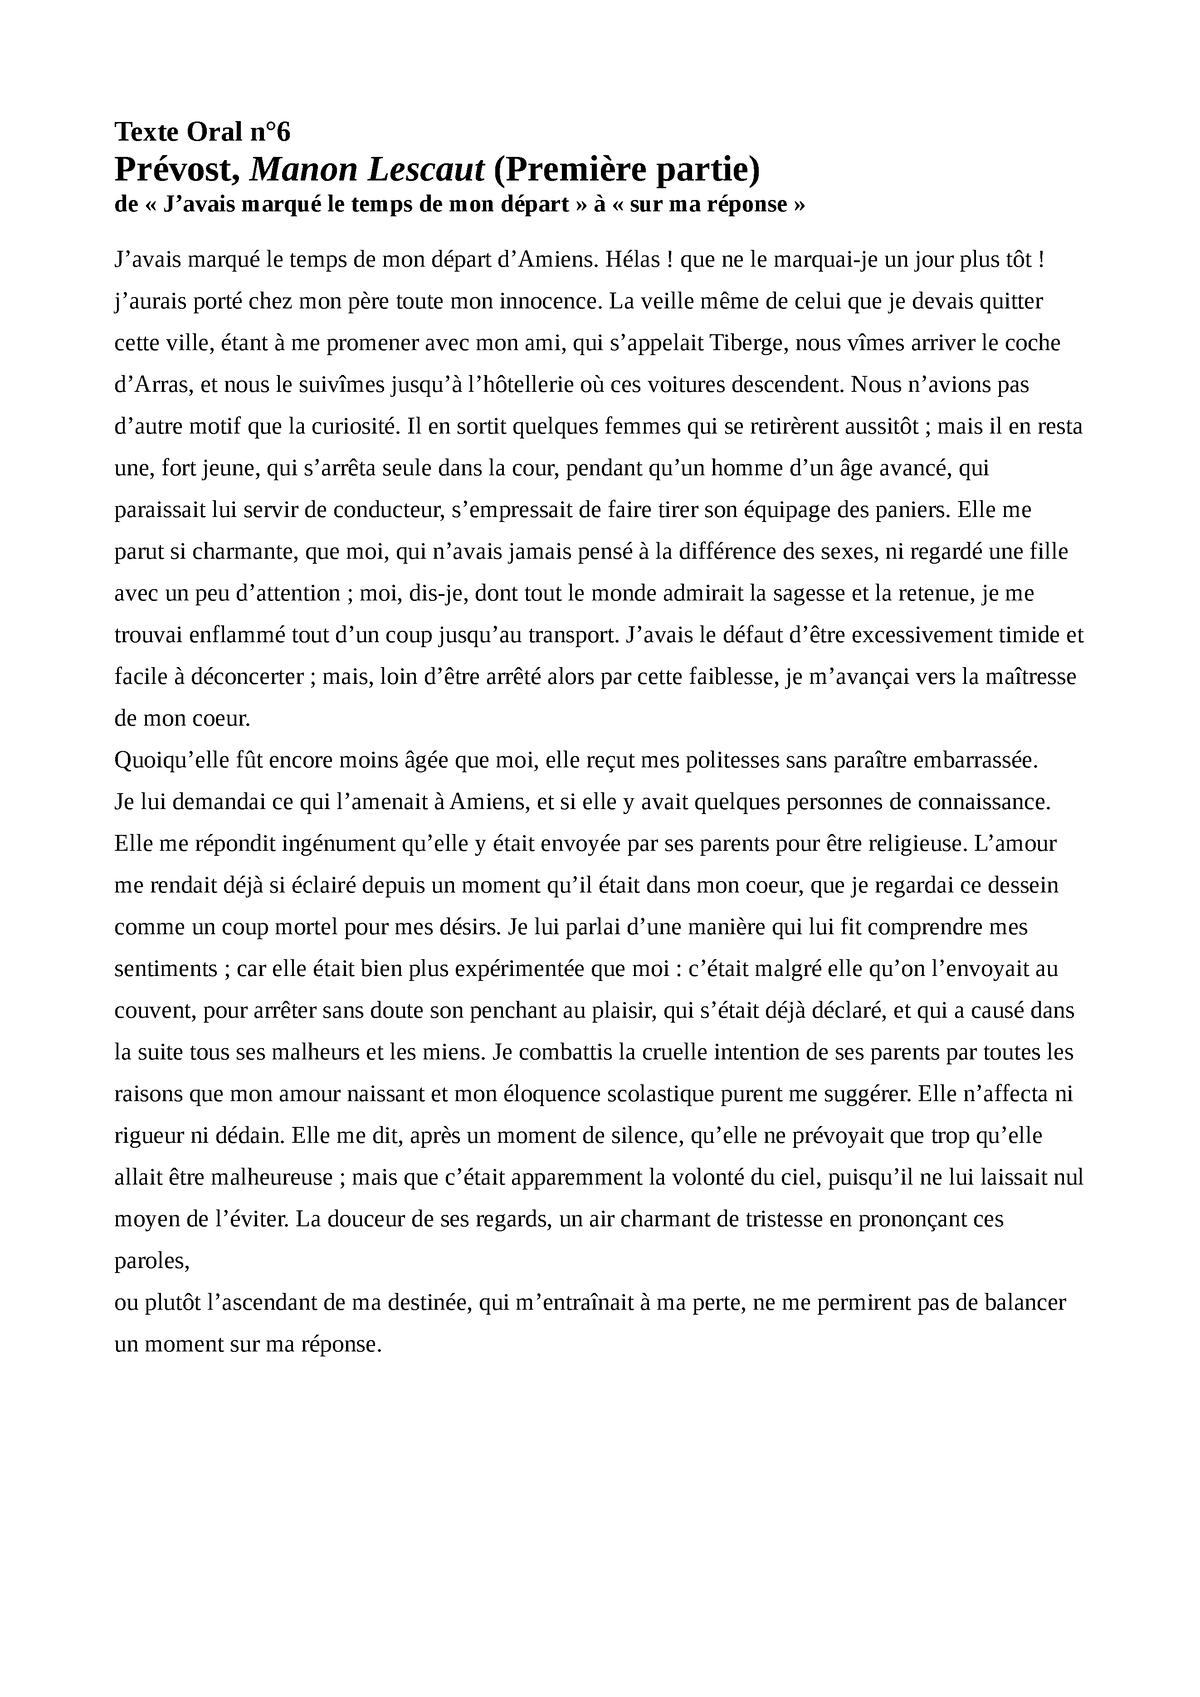 dissertation bac de francais manon lescaut